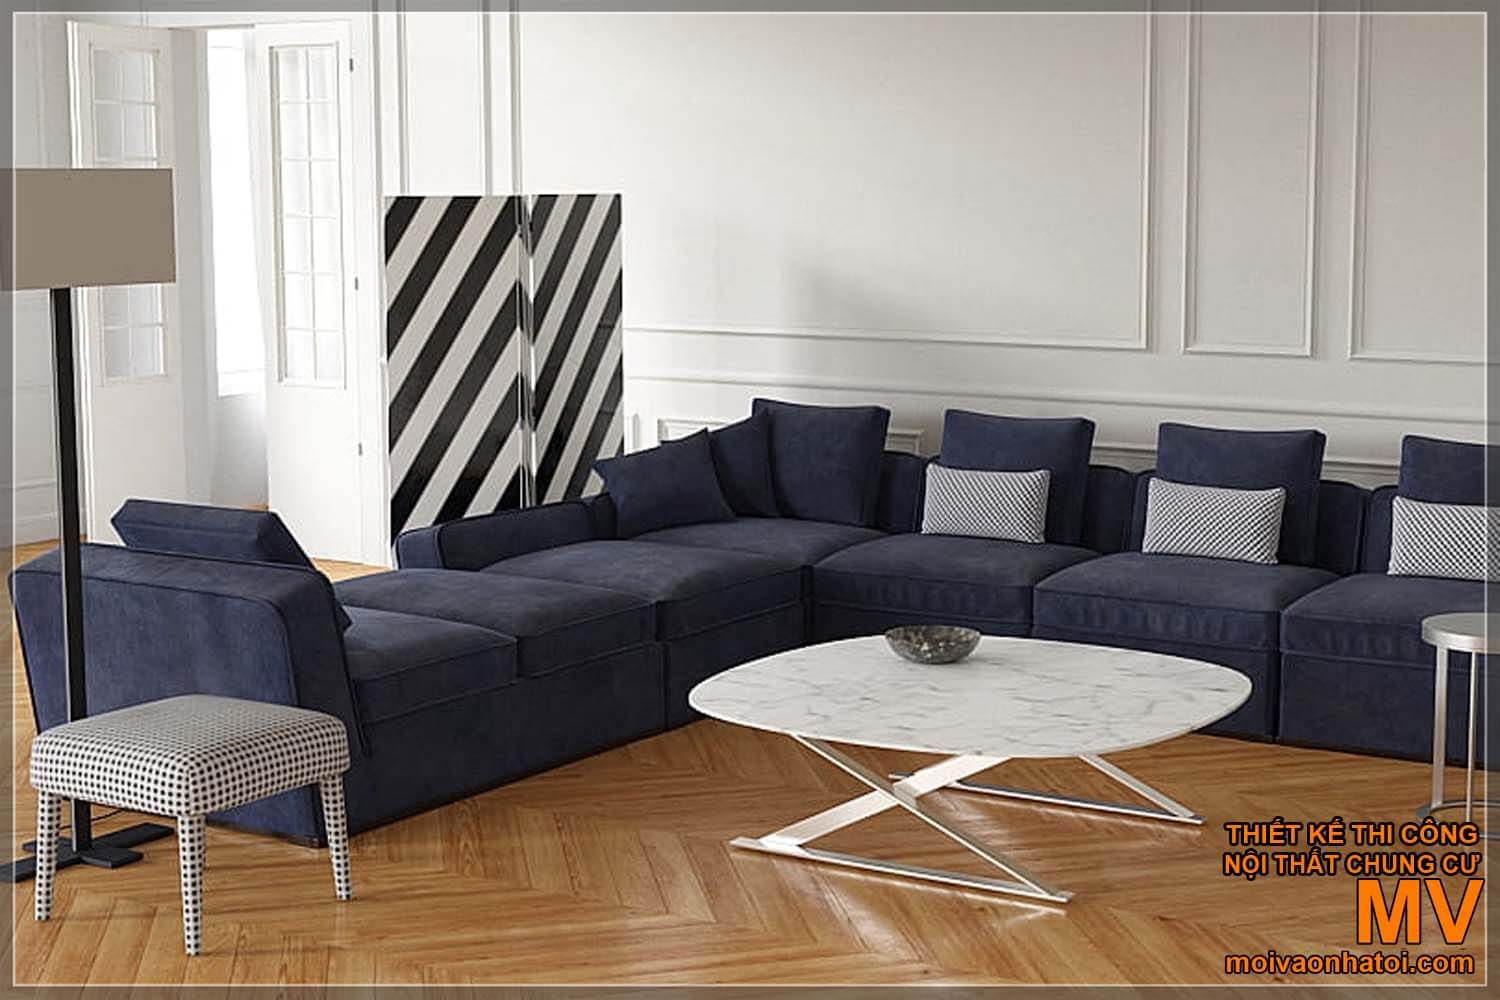 amostras de sofás simples e modernos para casas neoclássicas